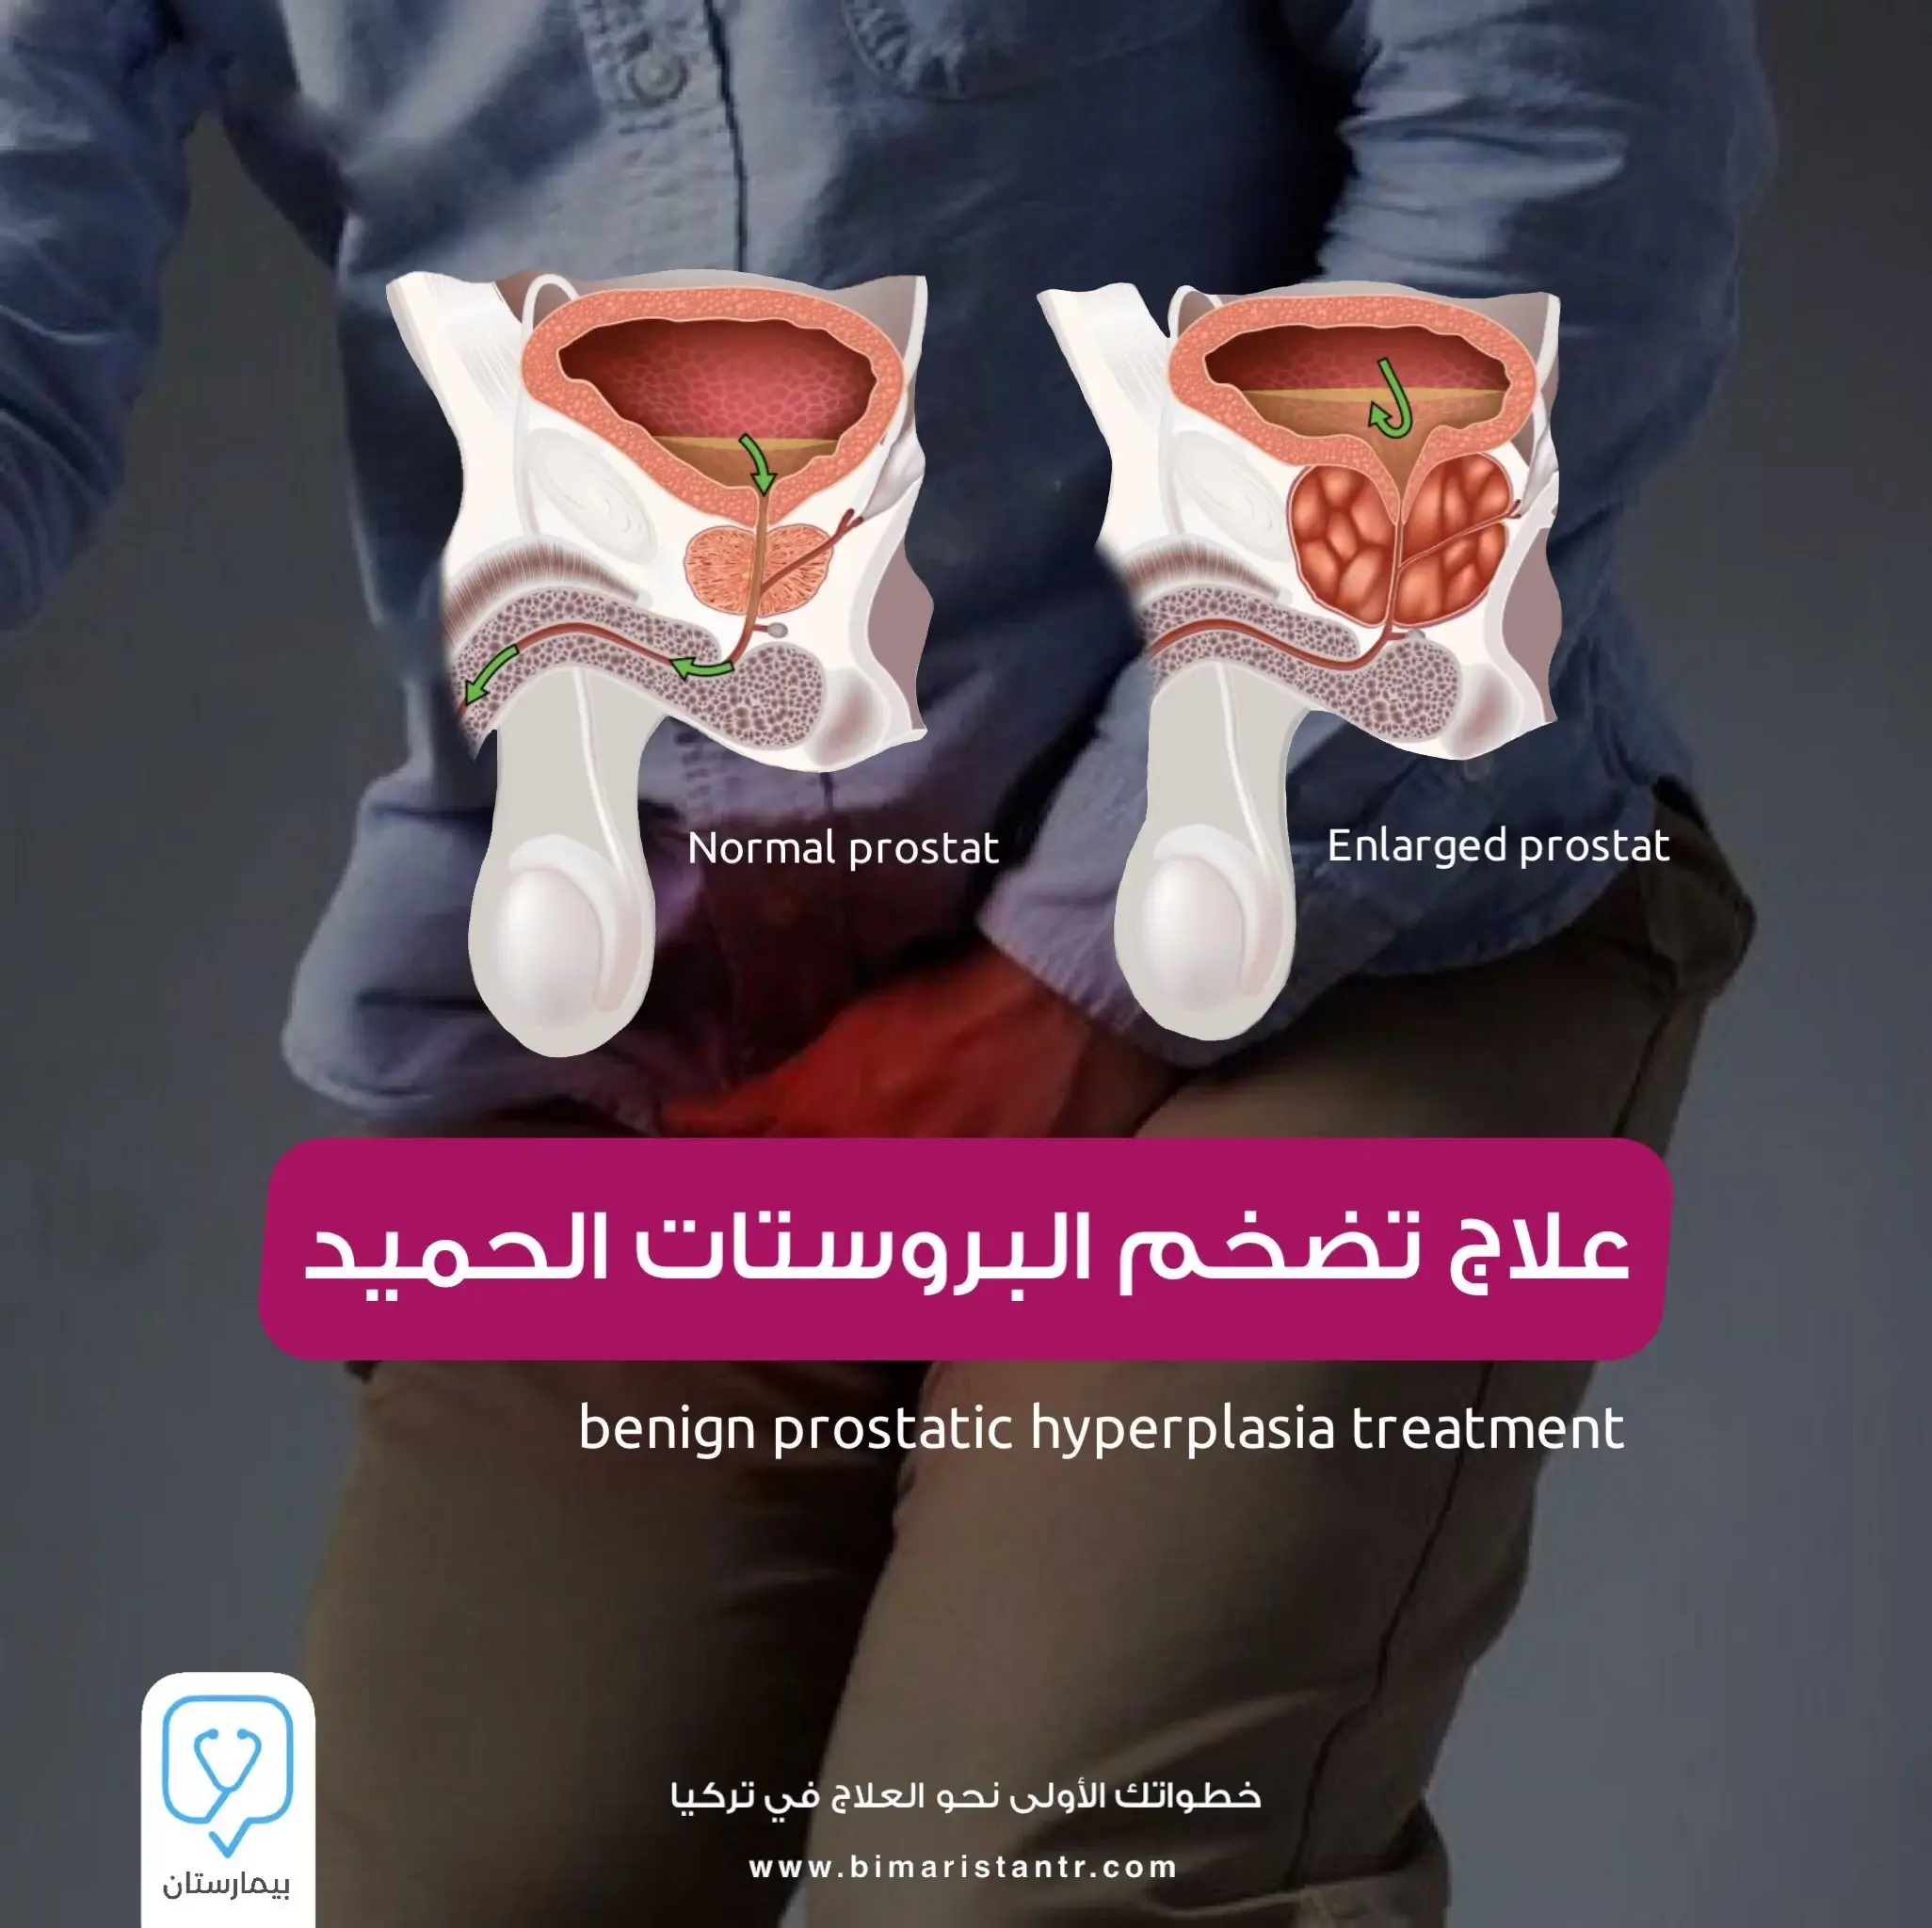 Treatment of benign prostatic hyperplasia in Turkey